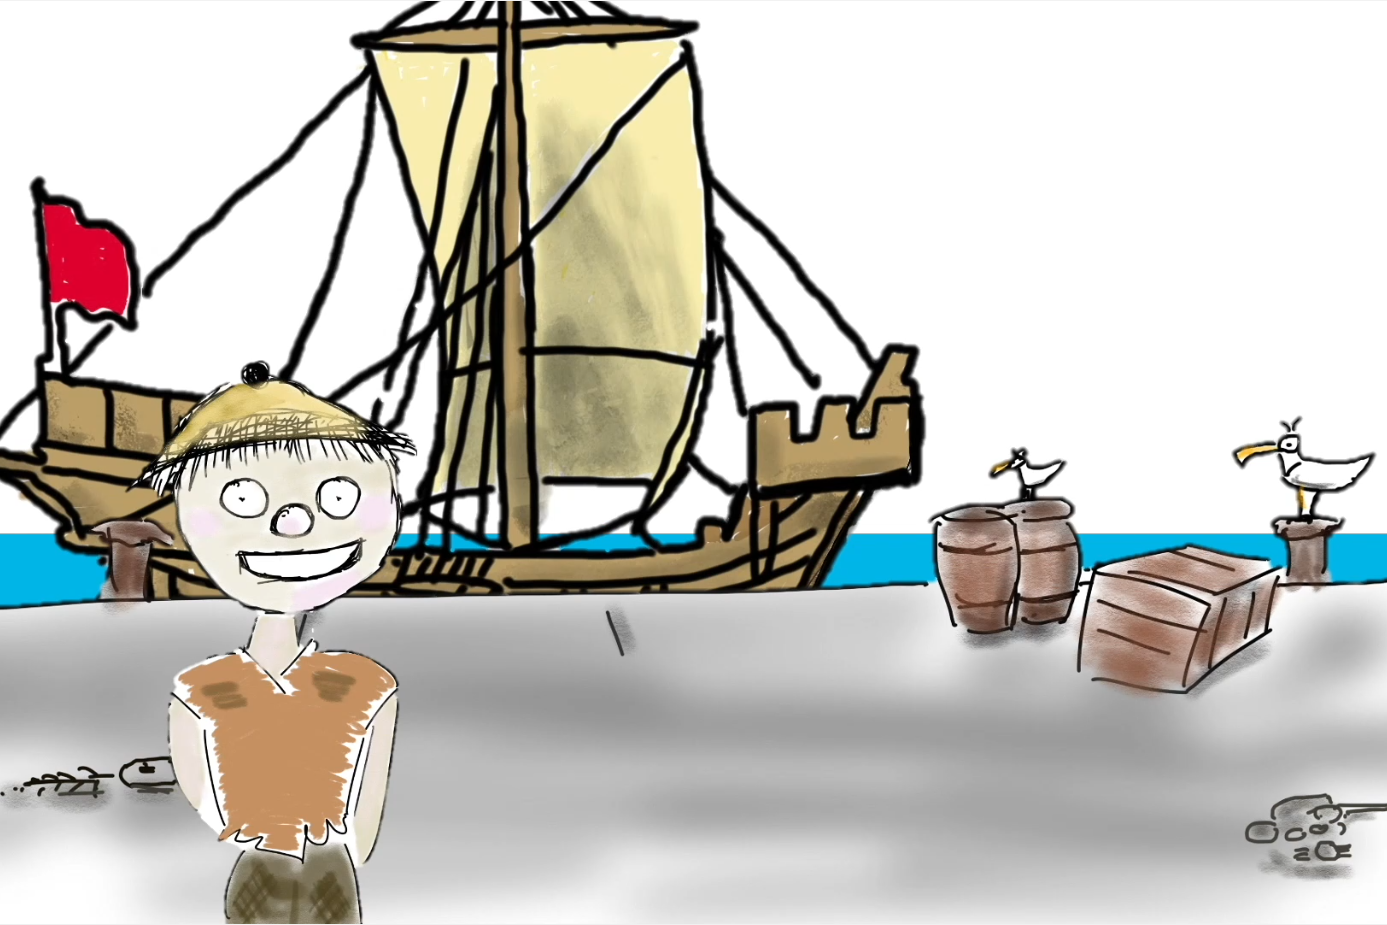 Trickfilm: Schiffsjunge Enno steht vor einer mittelalterlichen Kogge, daneben sitzen Möwen.